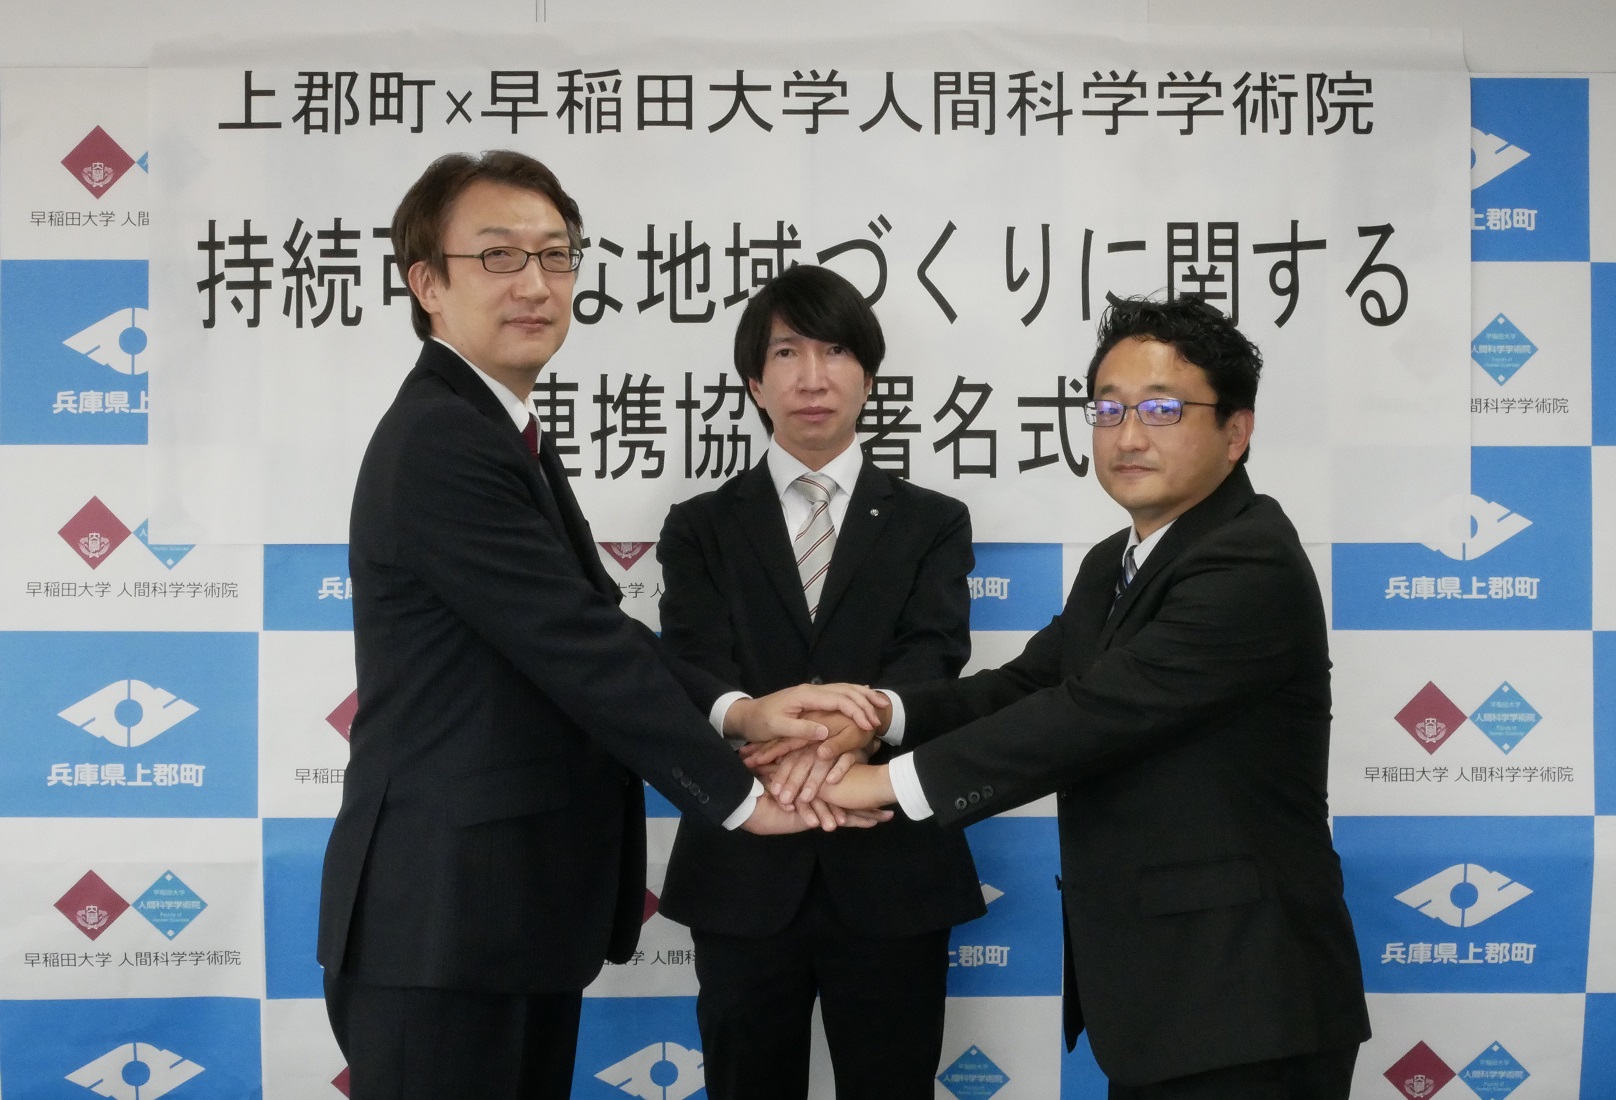 早稲田大学人間科学学術院との連携協定調印式